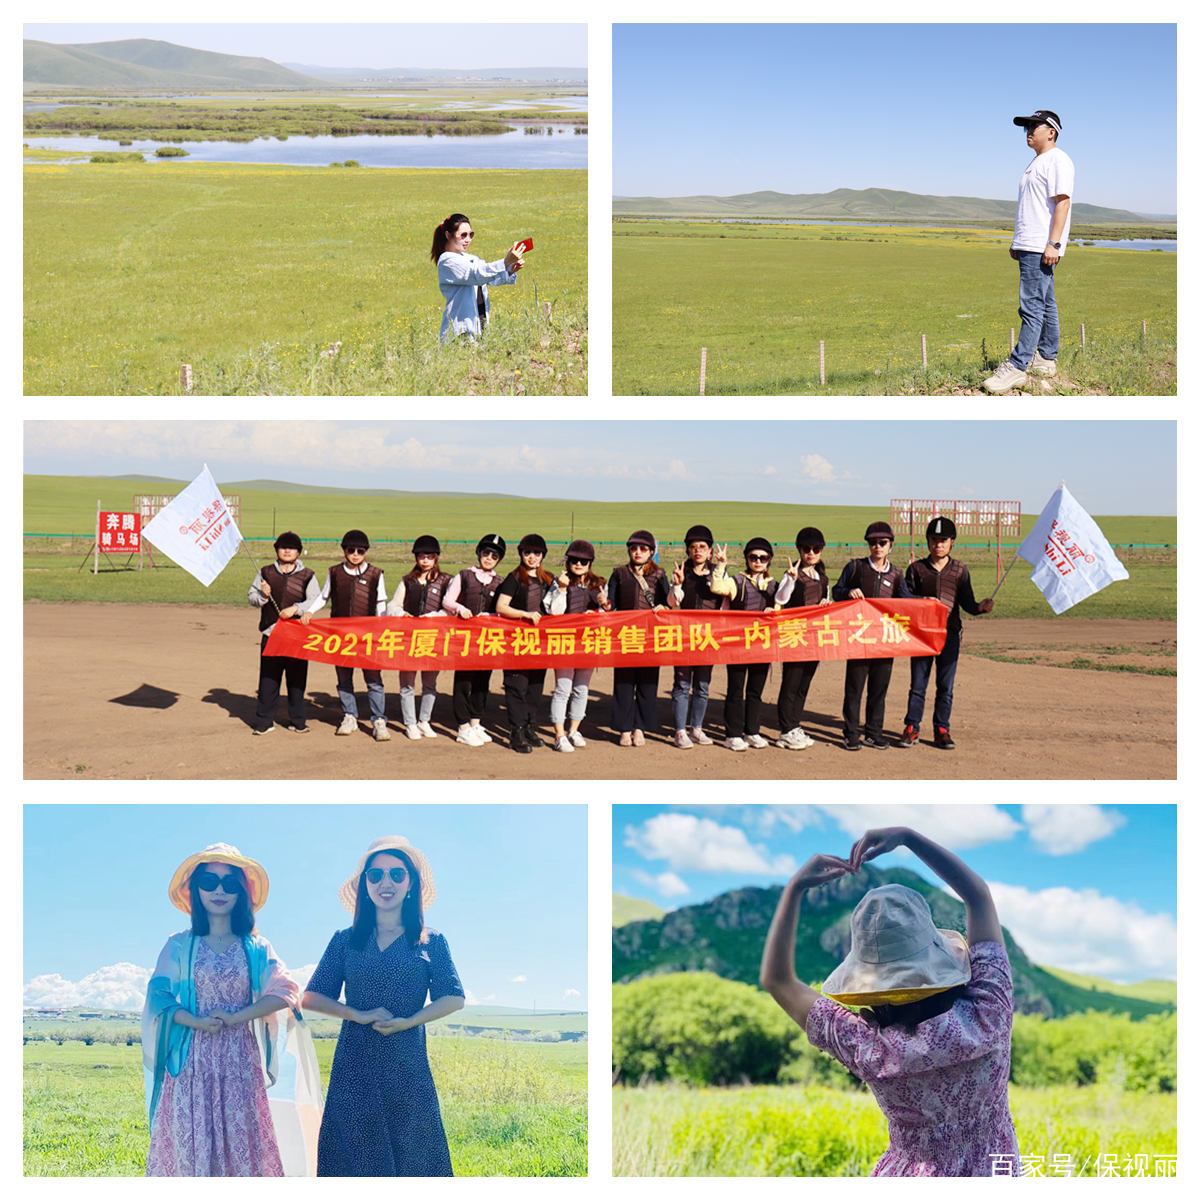 感受草原风情，释放身心之旅——保视丽2021内蒙古团建